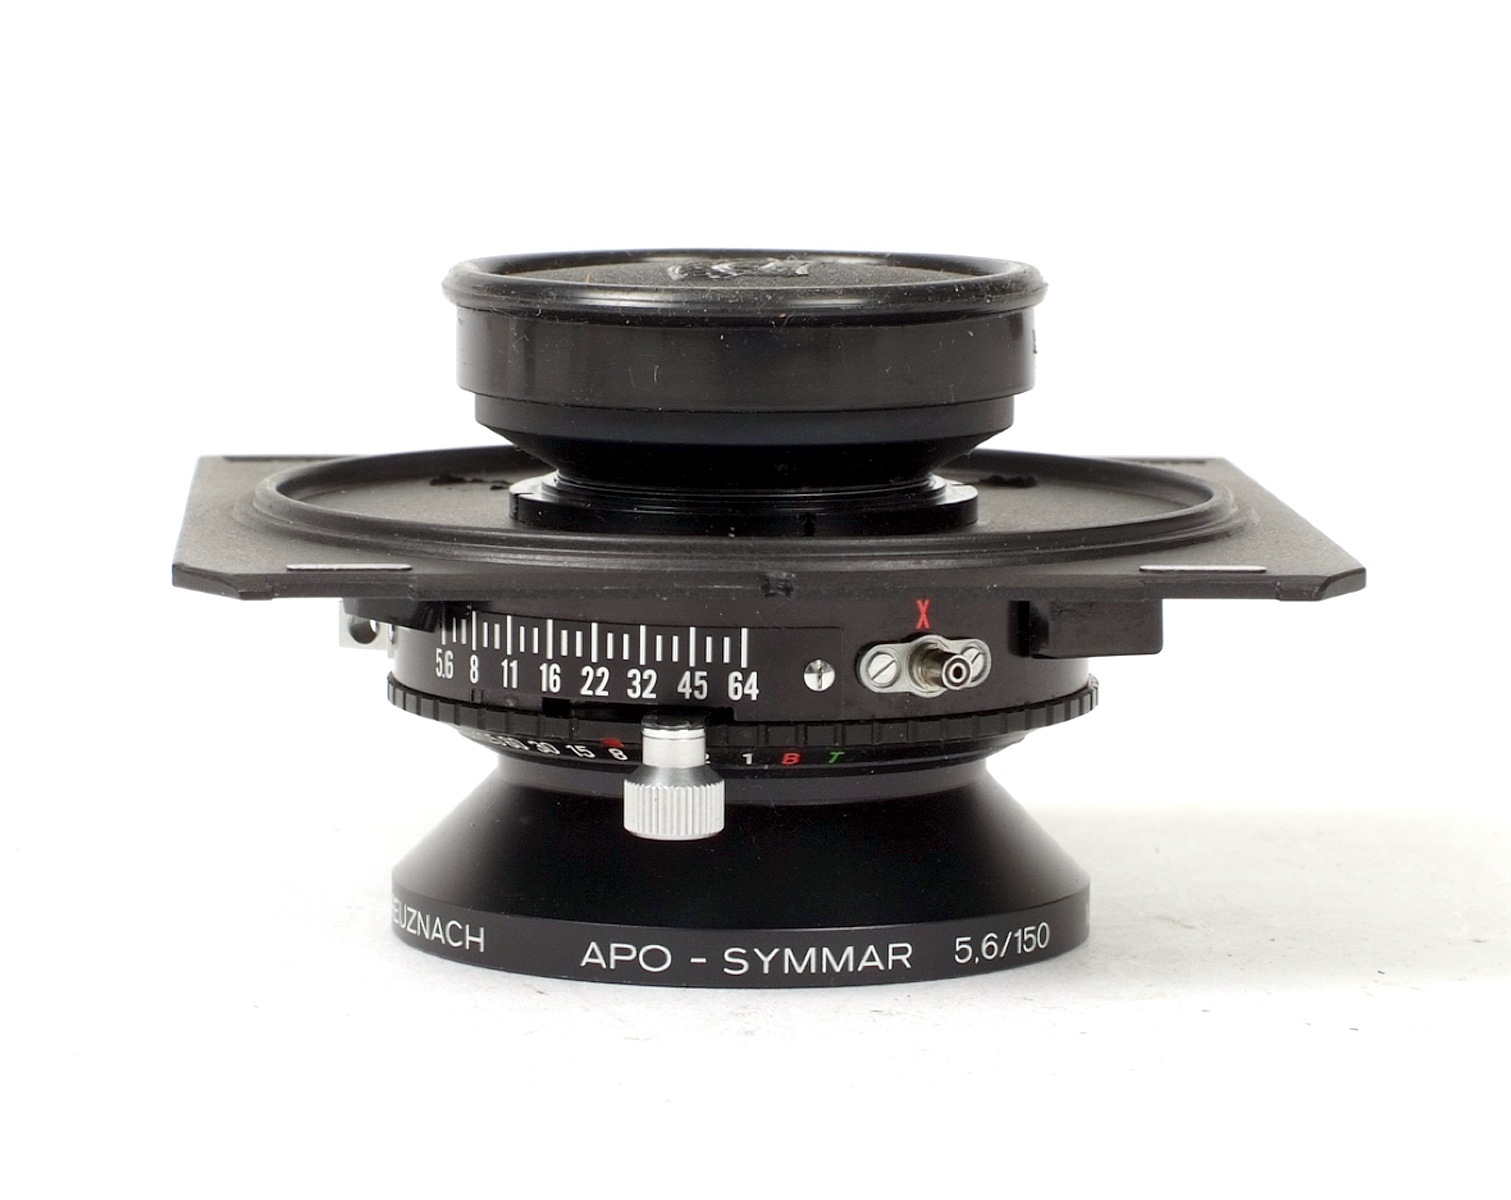 Schneider APO Symmar 150mm f5.6 Lens. - Image 3 of 3